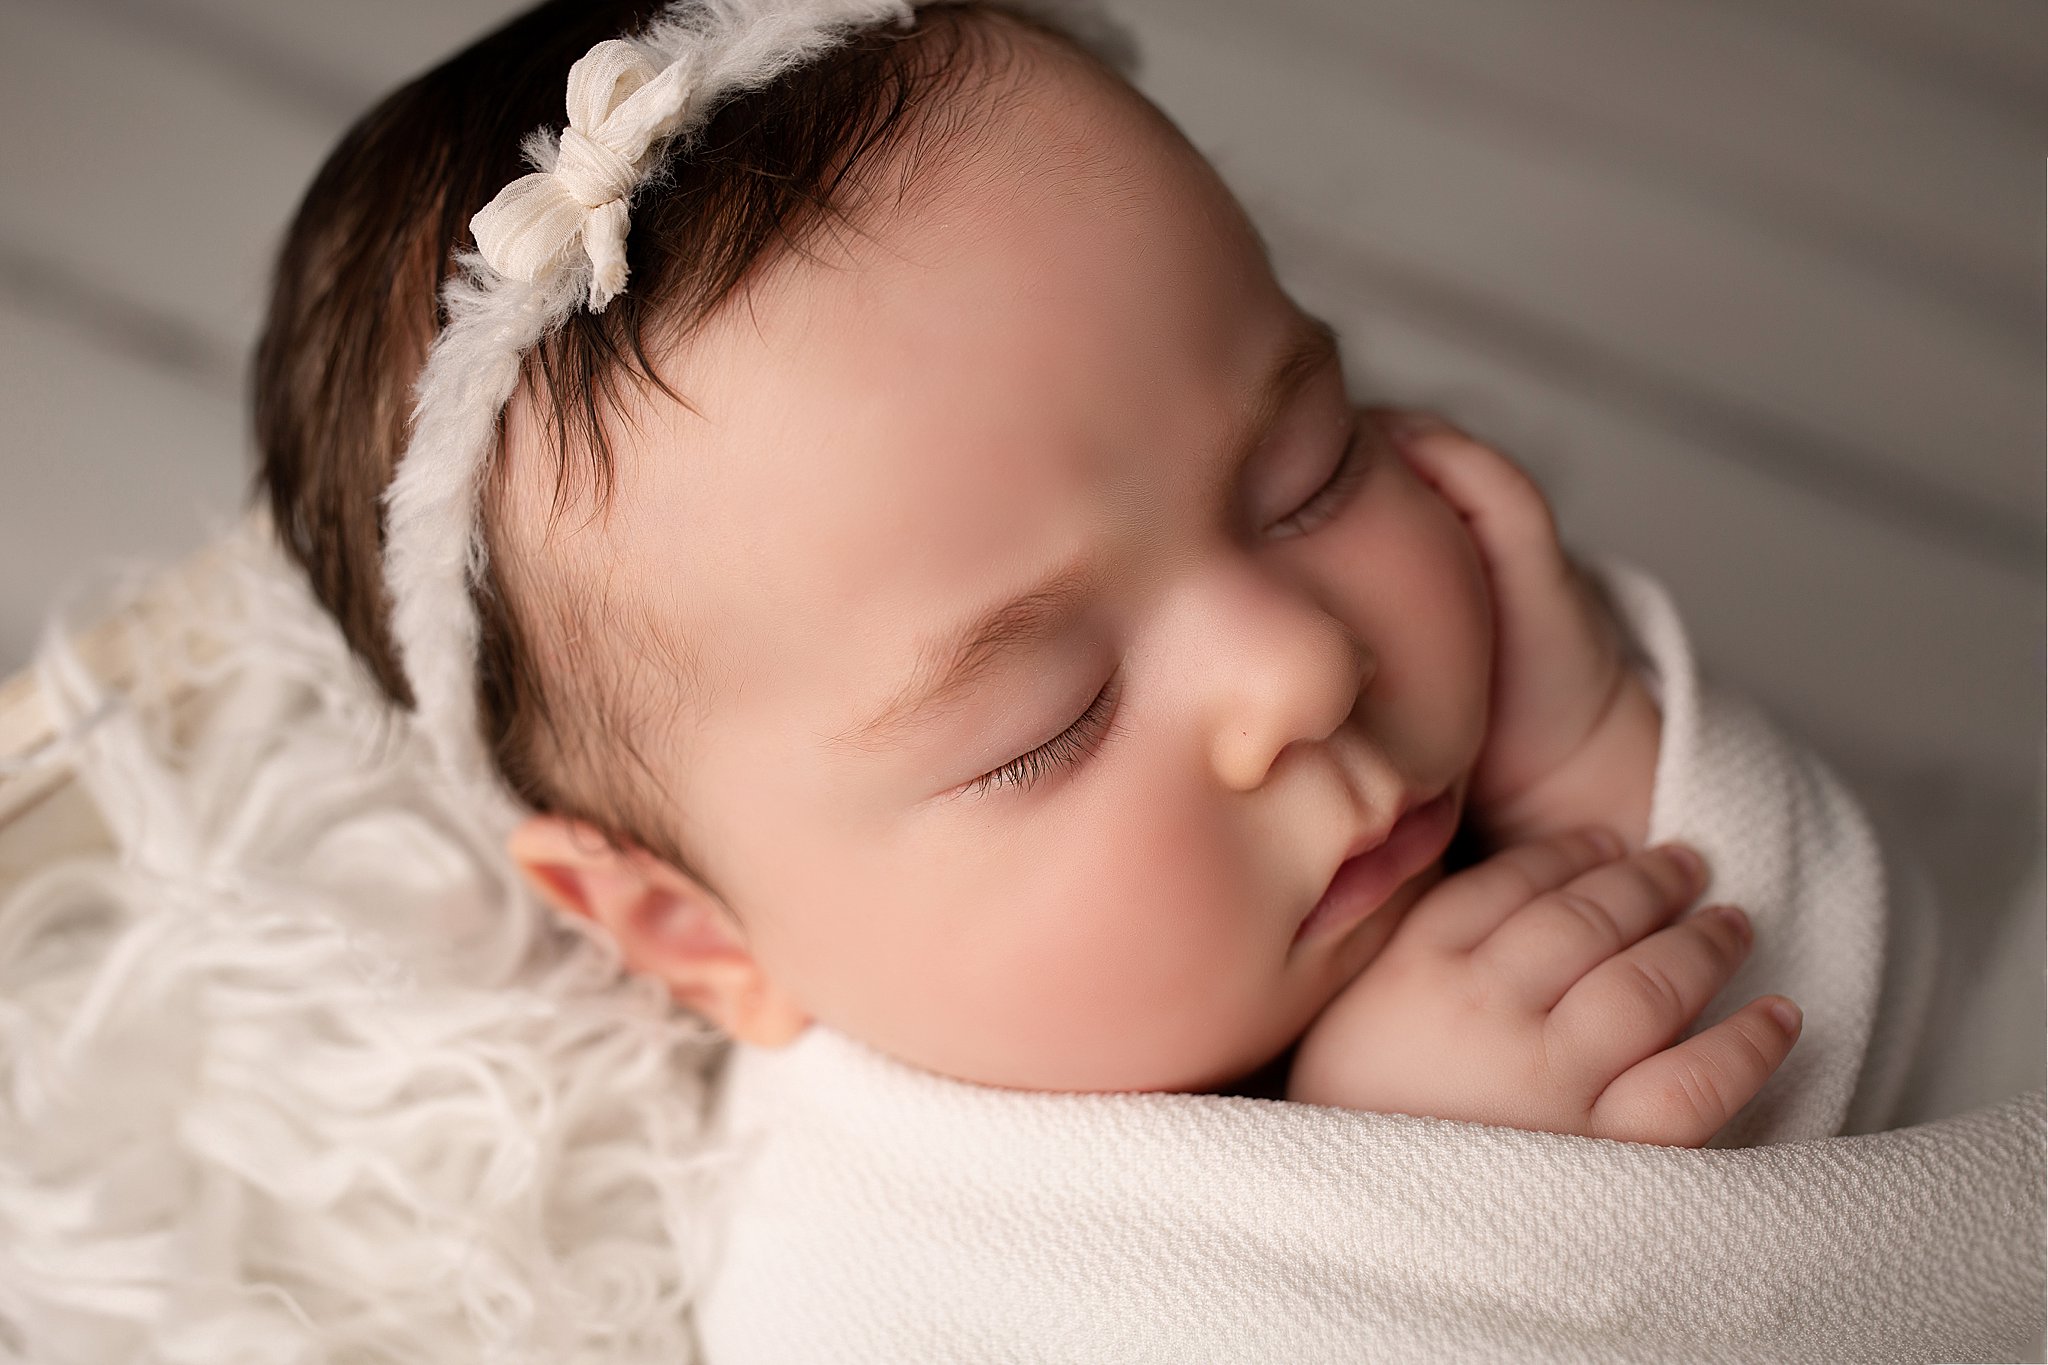 Baby girl macro studio newborn photography